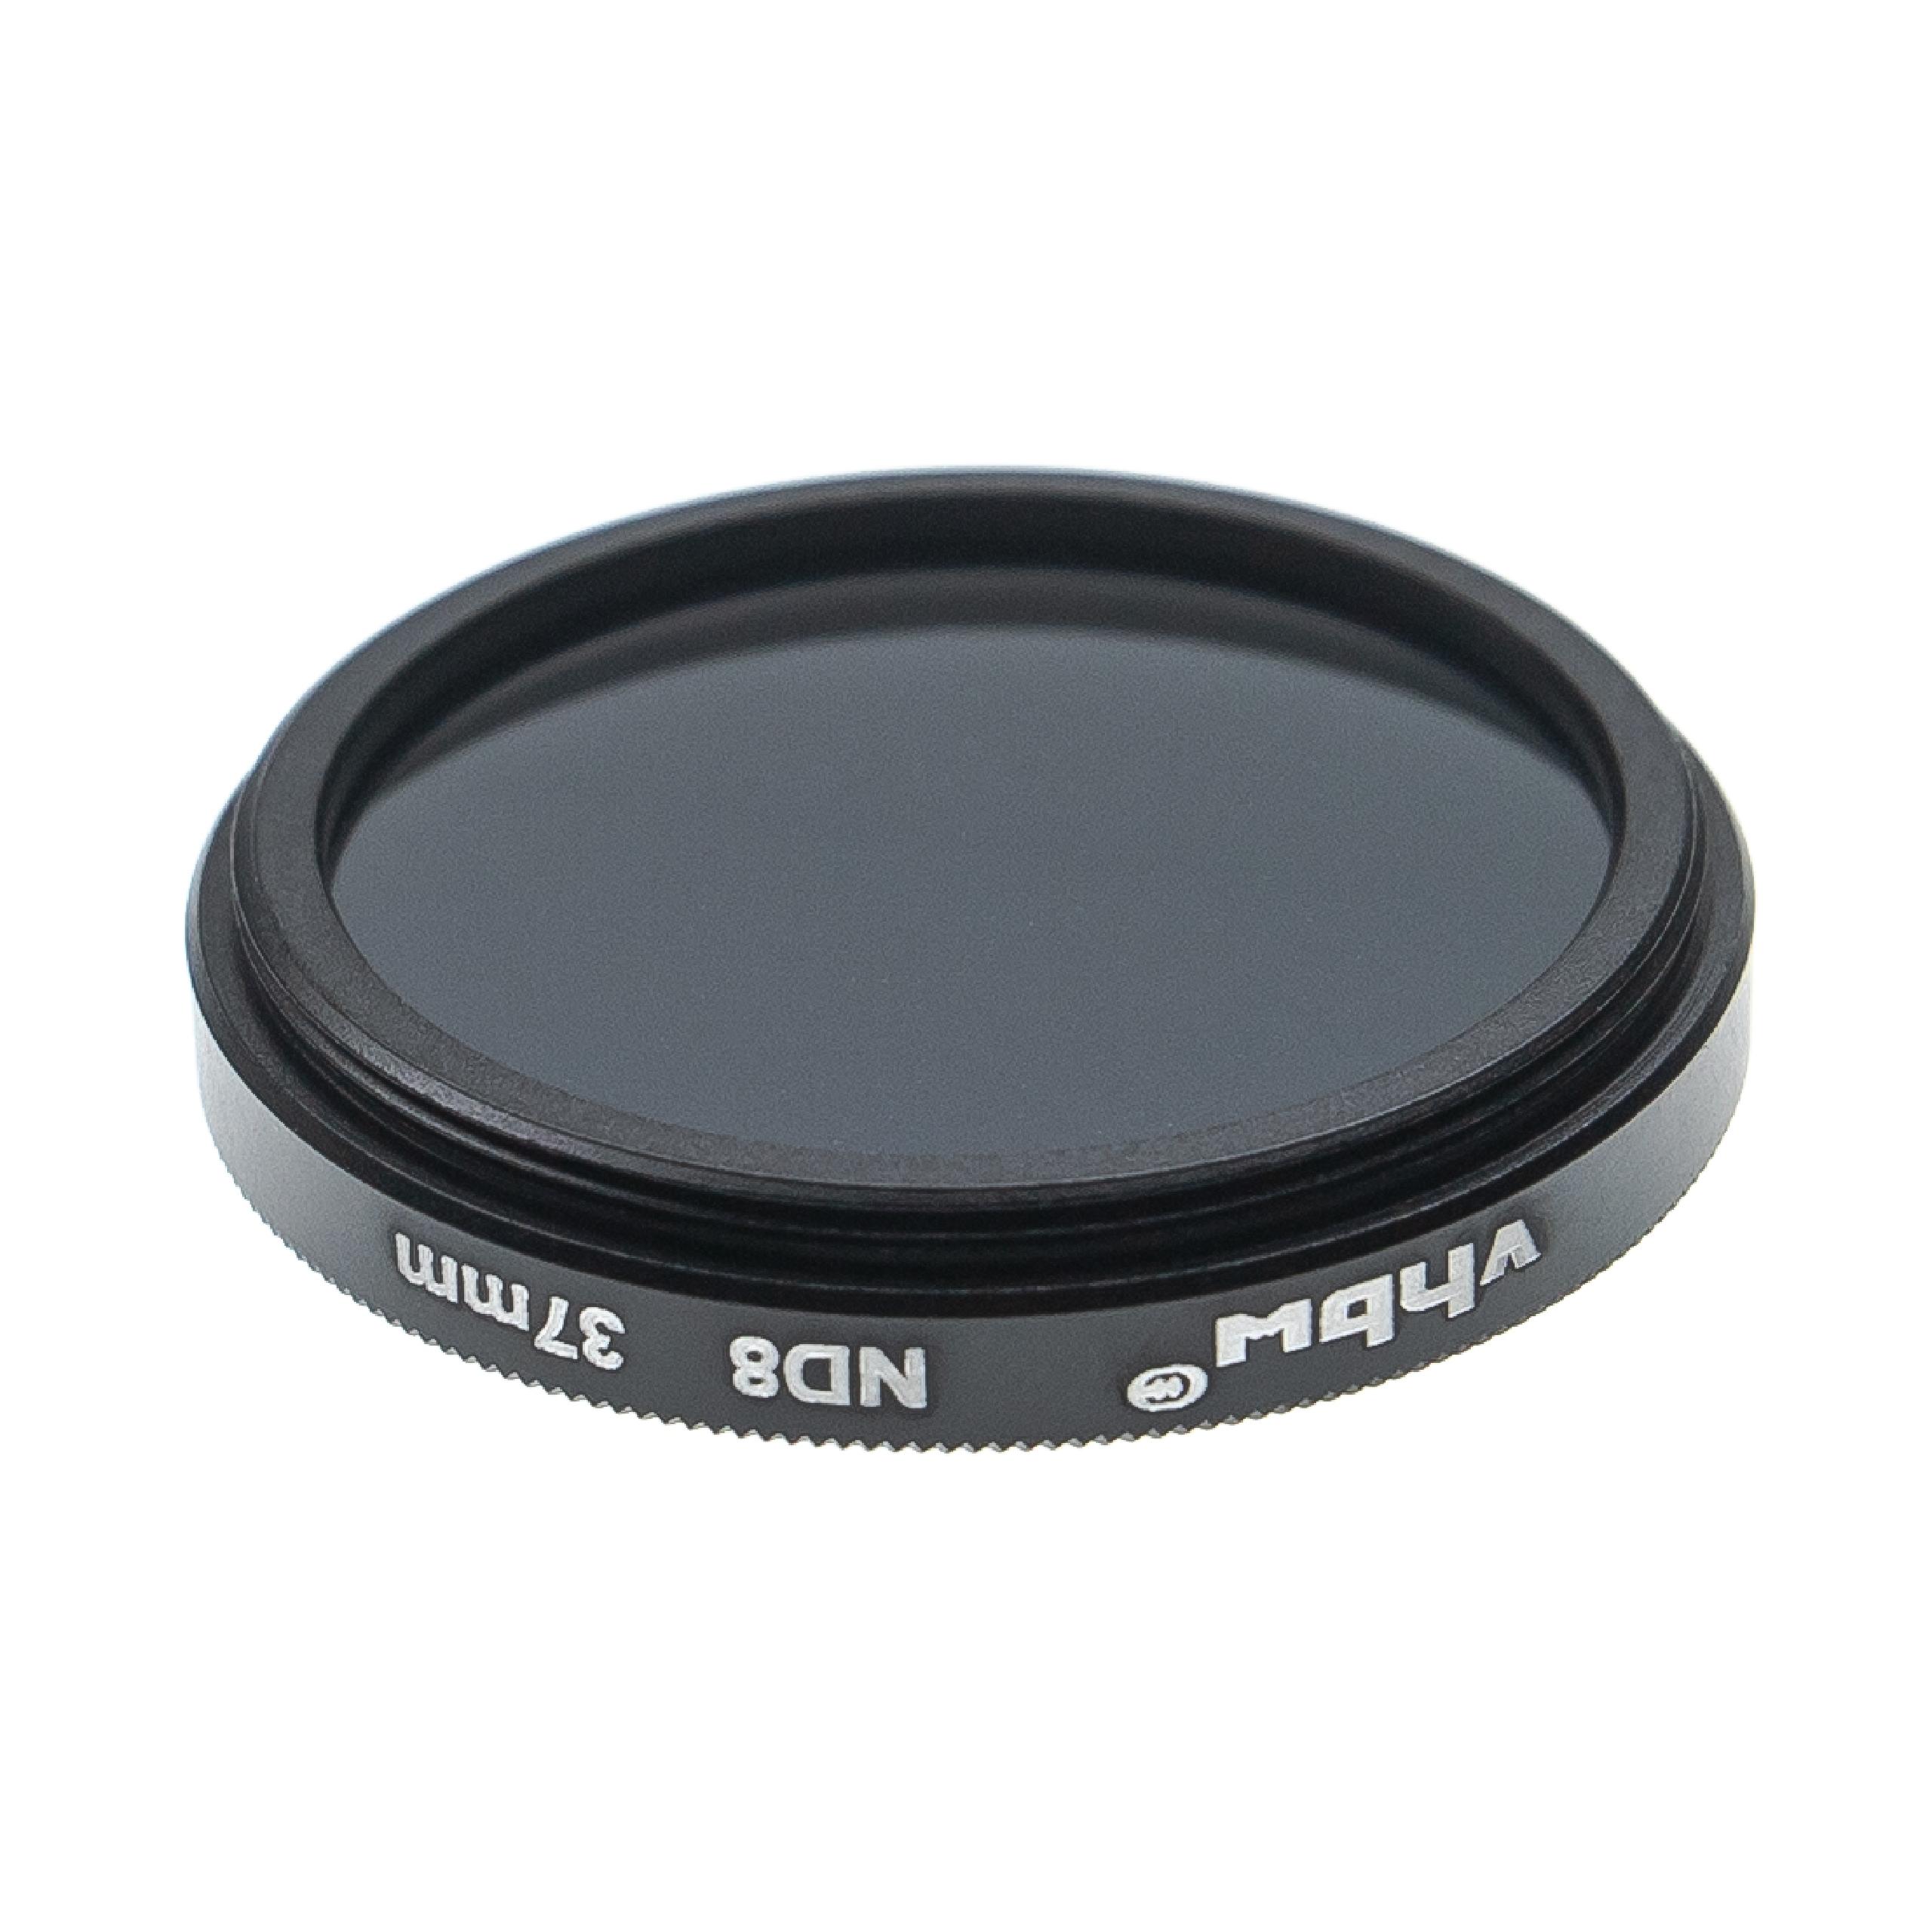 Filtro ND universal ND 8 para objetivos de cámara con rosca de filtro de 37 mm - Filtro gris